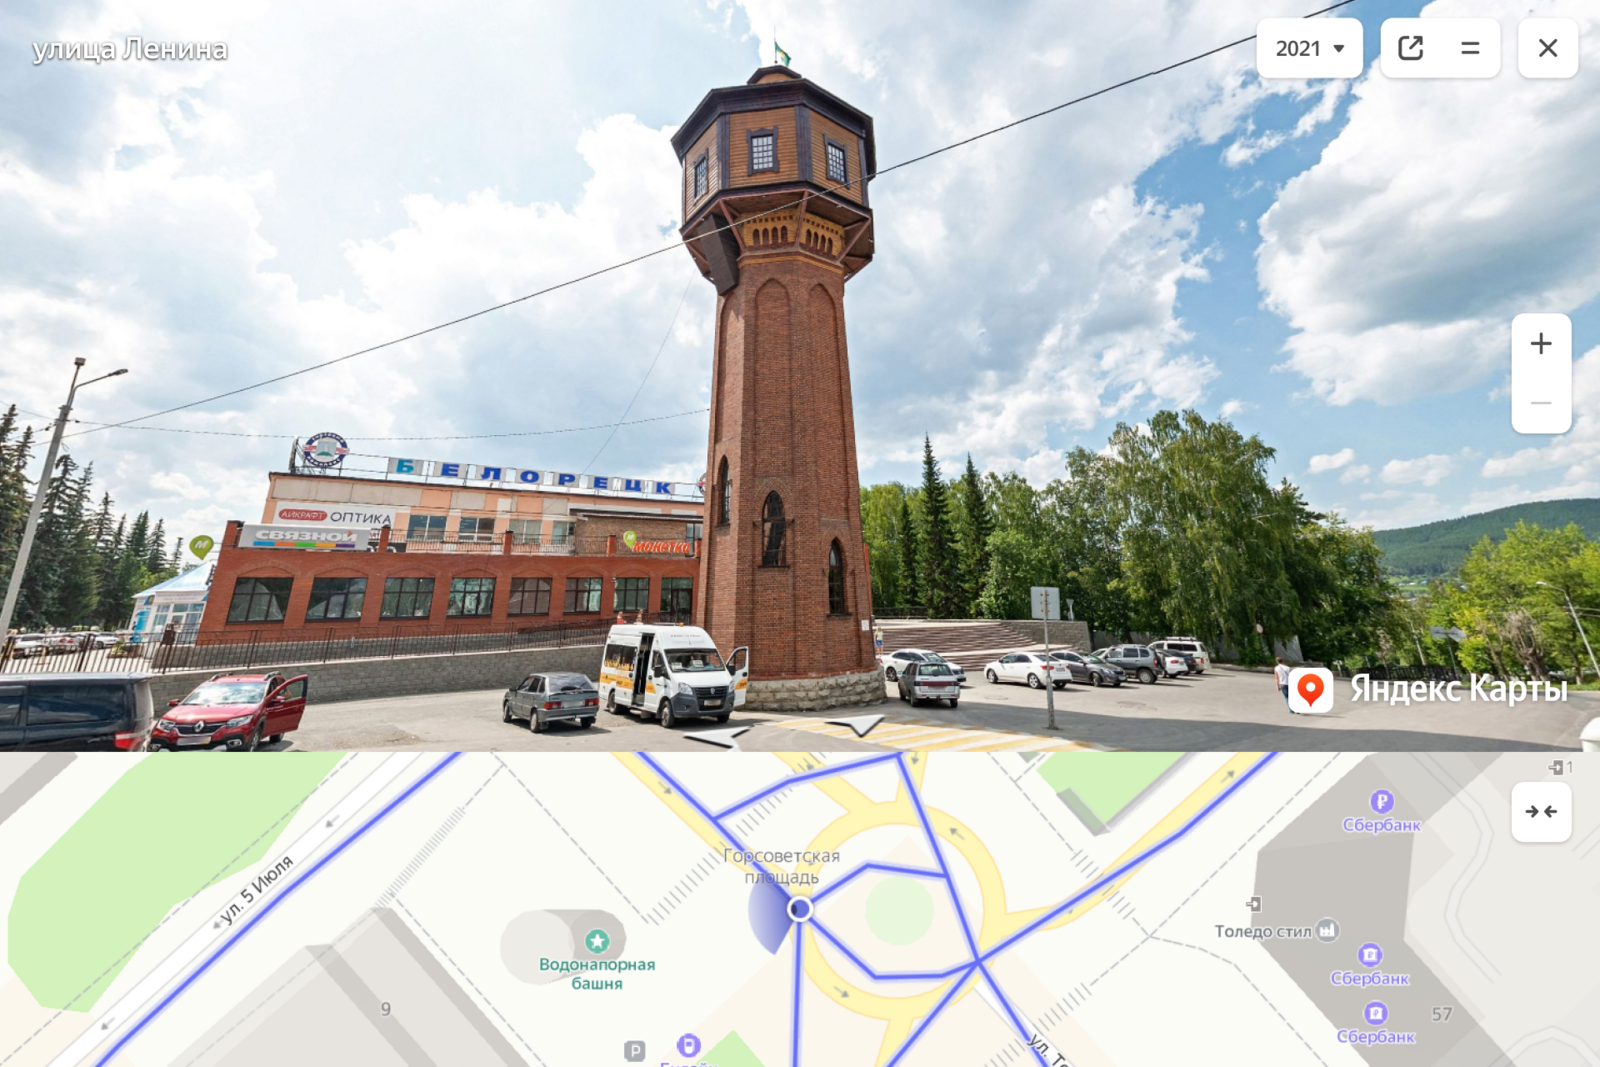 Мелеуз, Кумертау, Белорецк, Сибай и Учалы появились в Яндекс.Картах в виде панорам